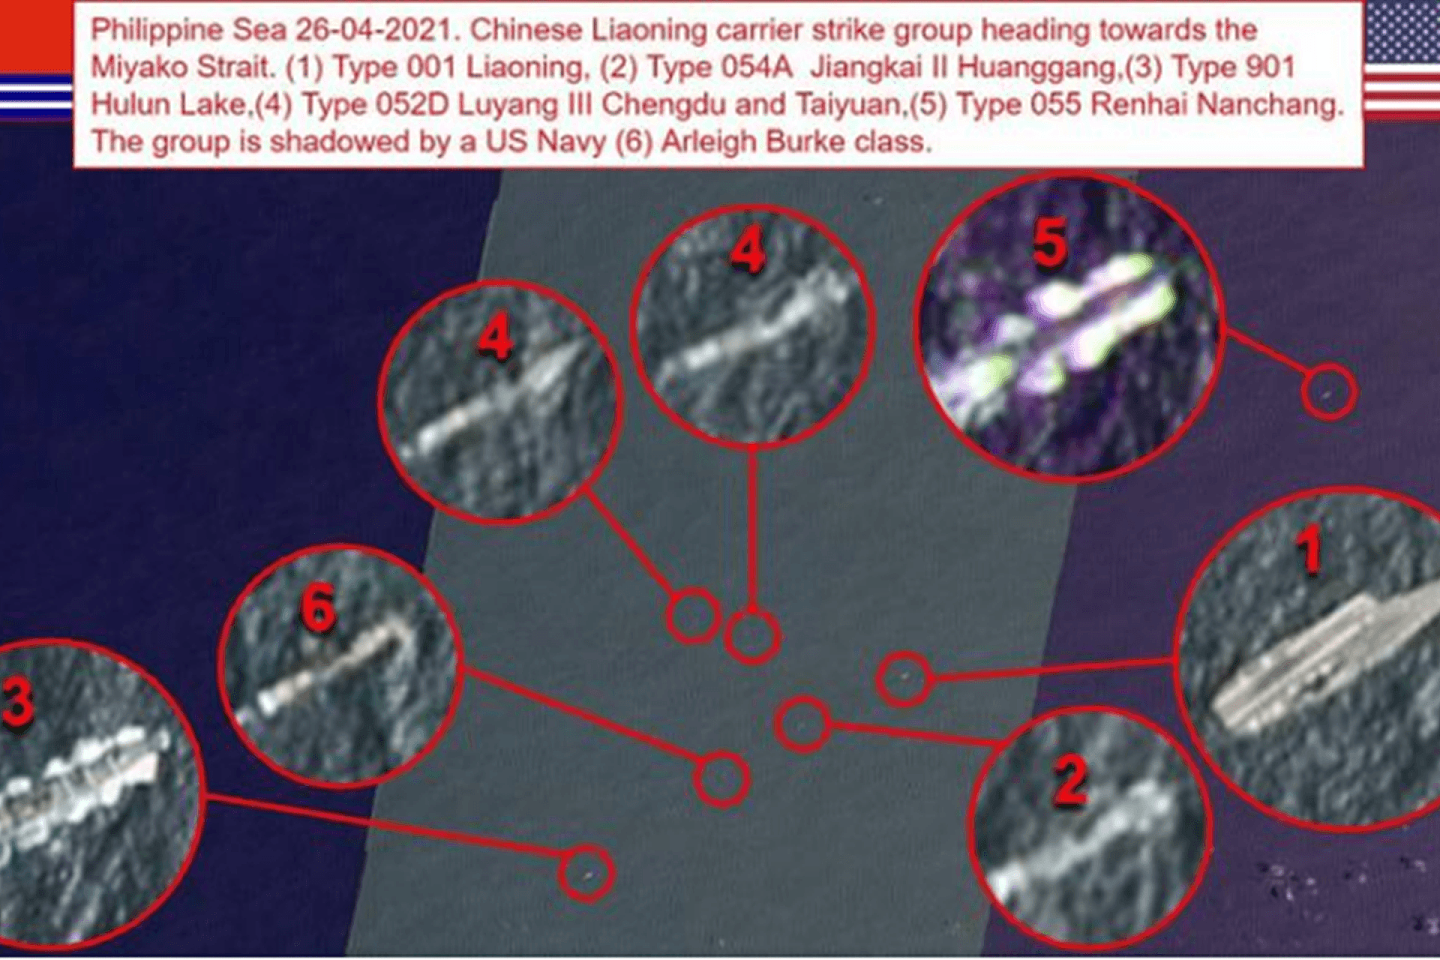 卫星图显示了美军舰及中国军舰的位置，图中标注的6号为美军舰。（Twitter@OSINT_1）